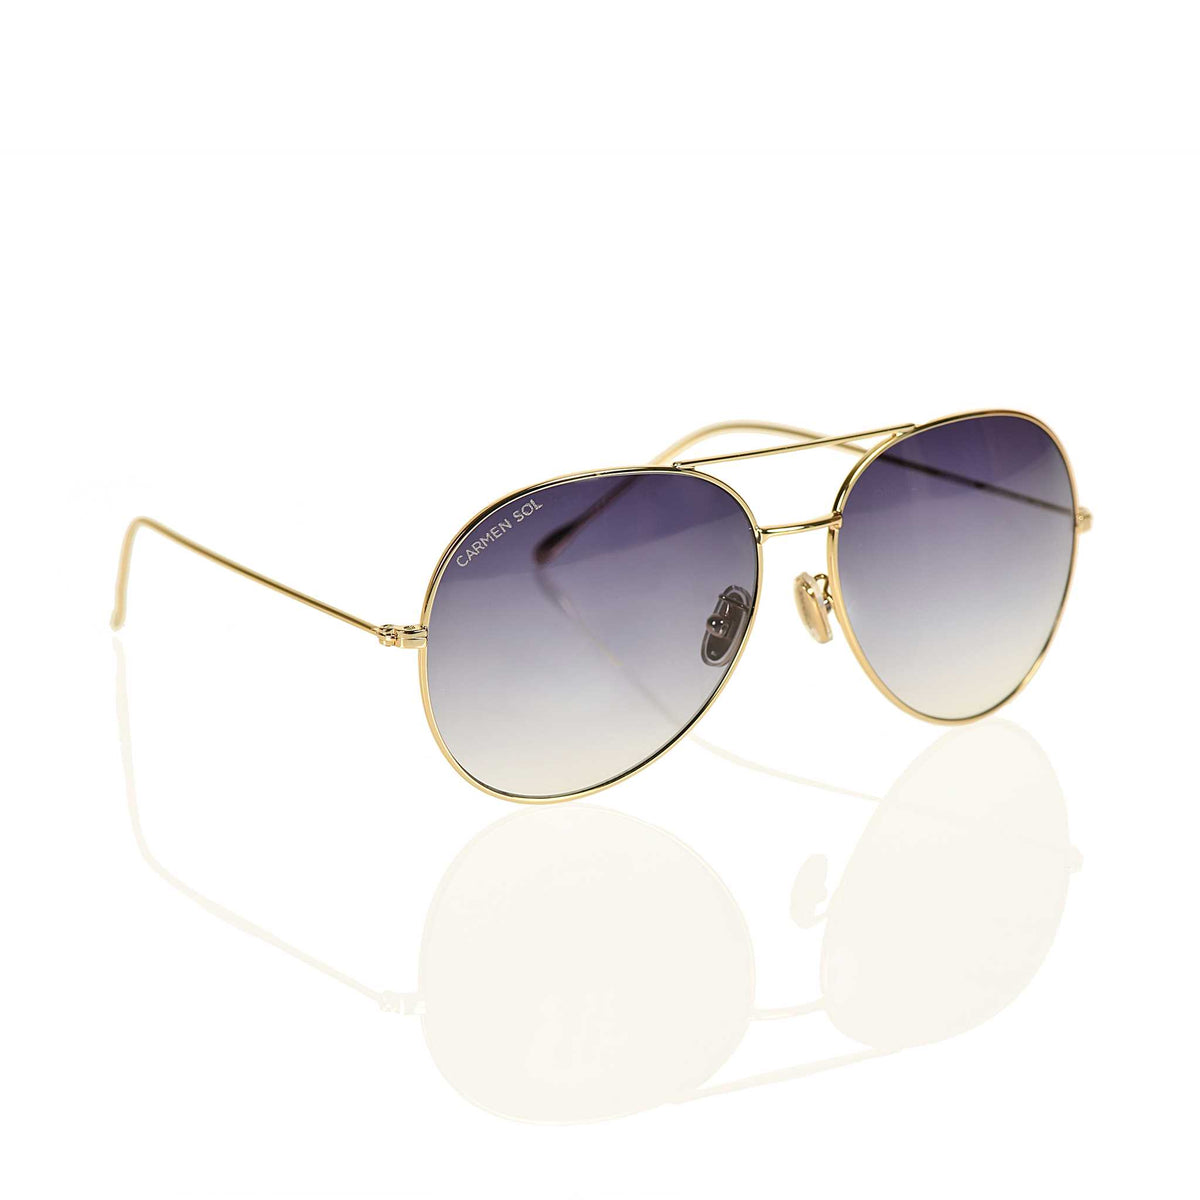 Gold sunglasses aviator for women with dark lenses